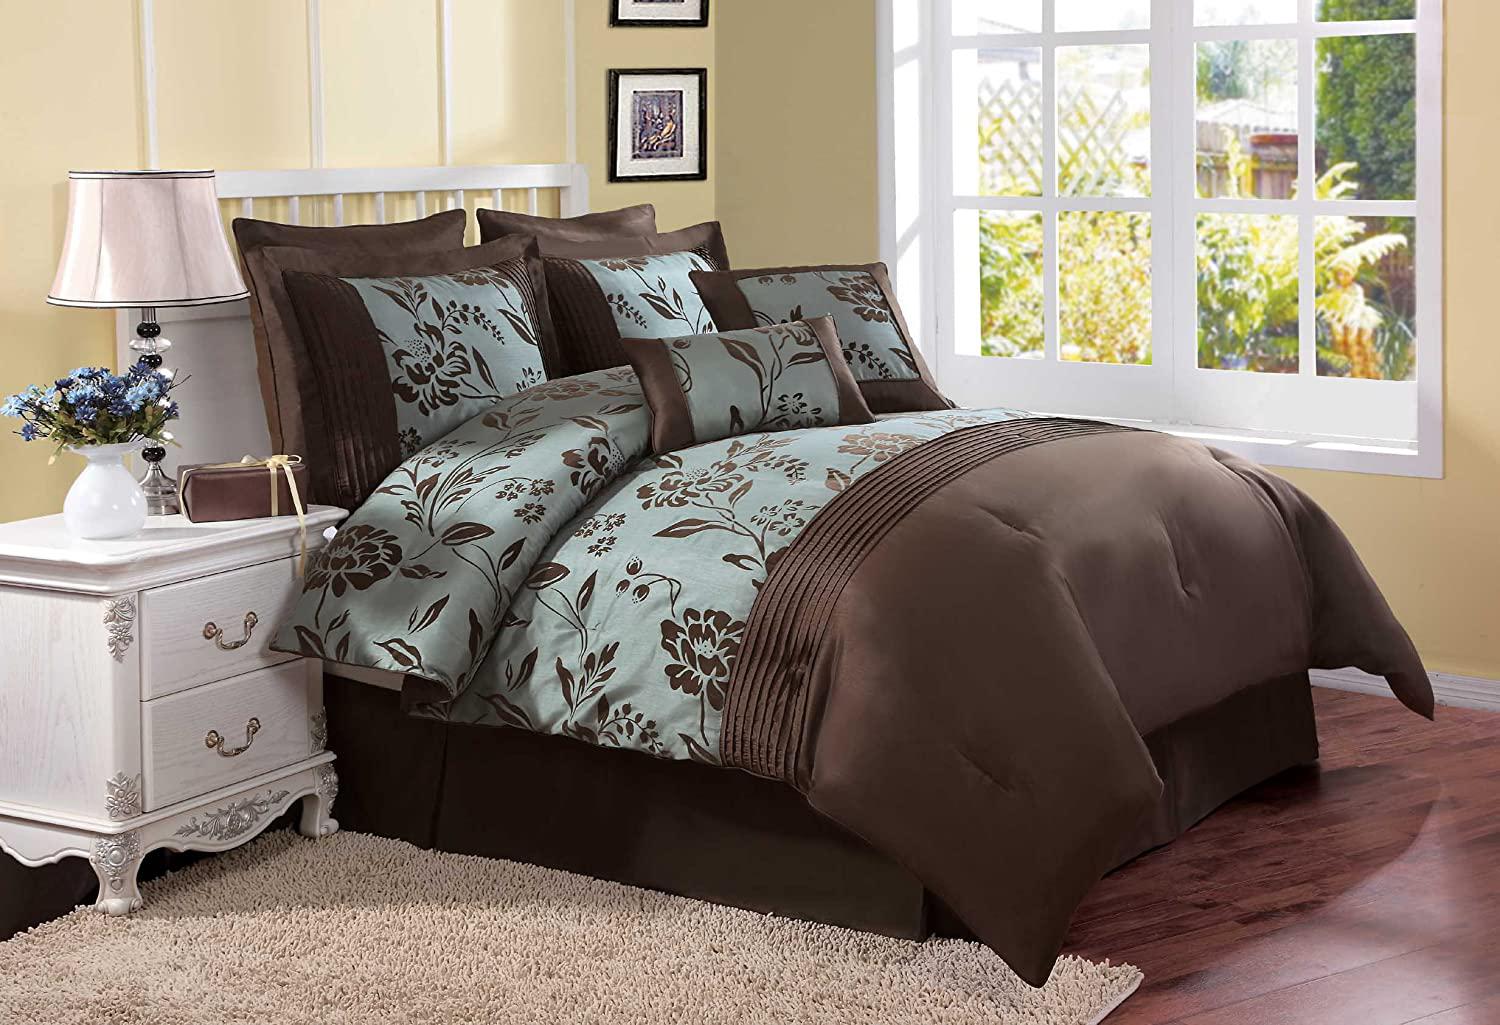 Luxury Master Bedroom Comforter Sets